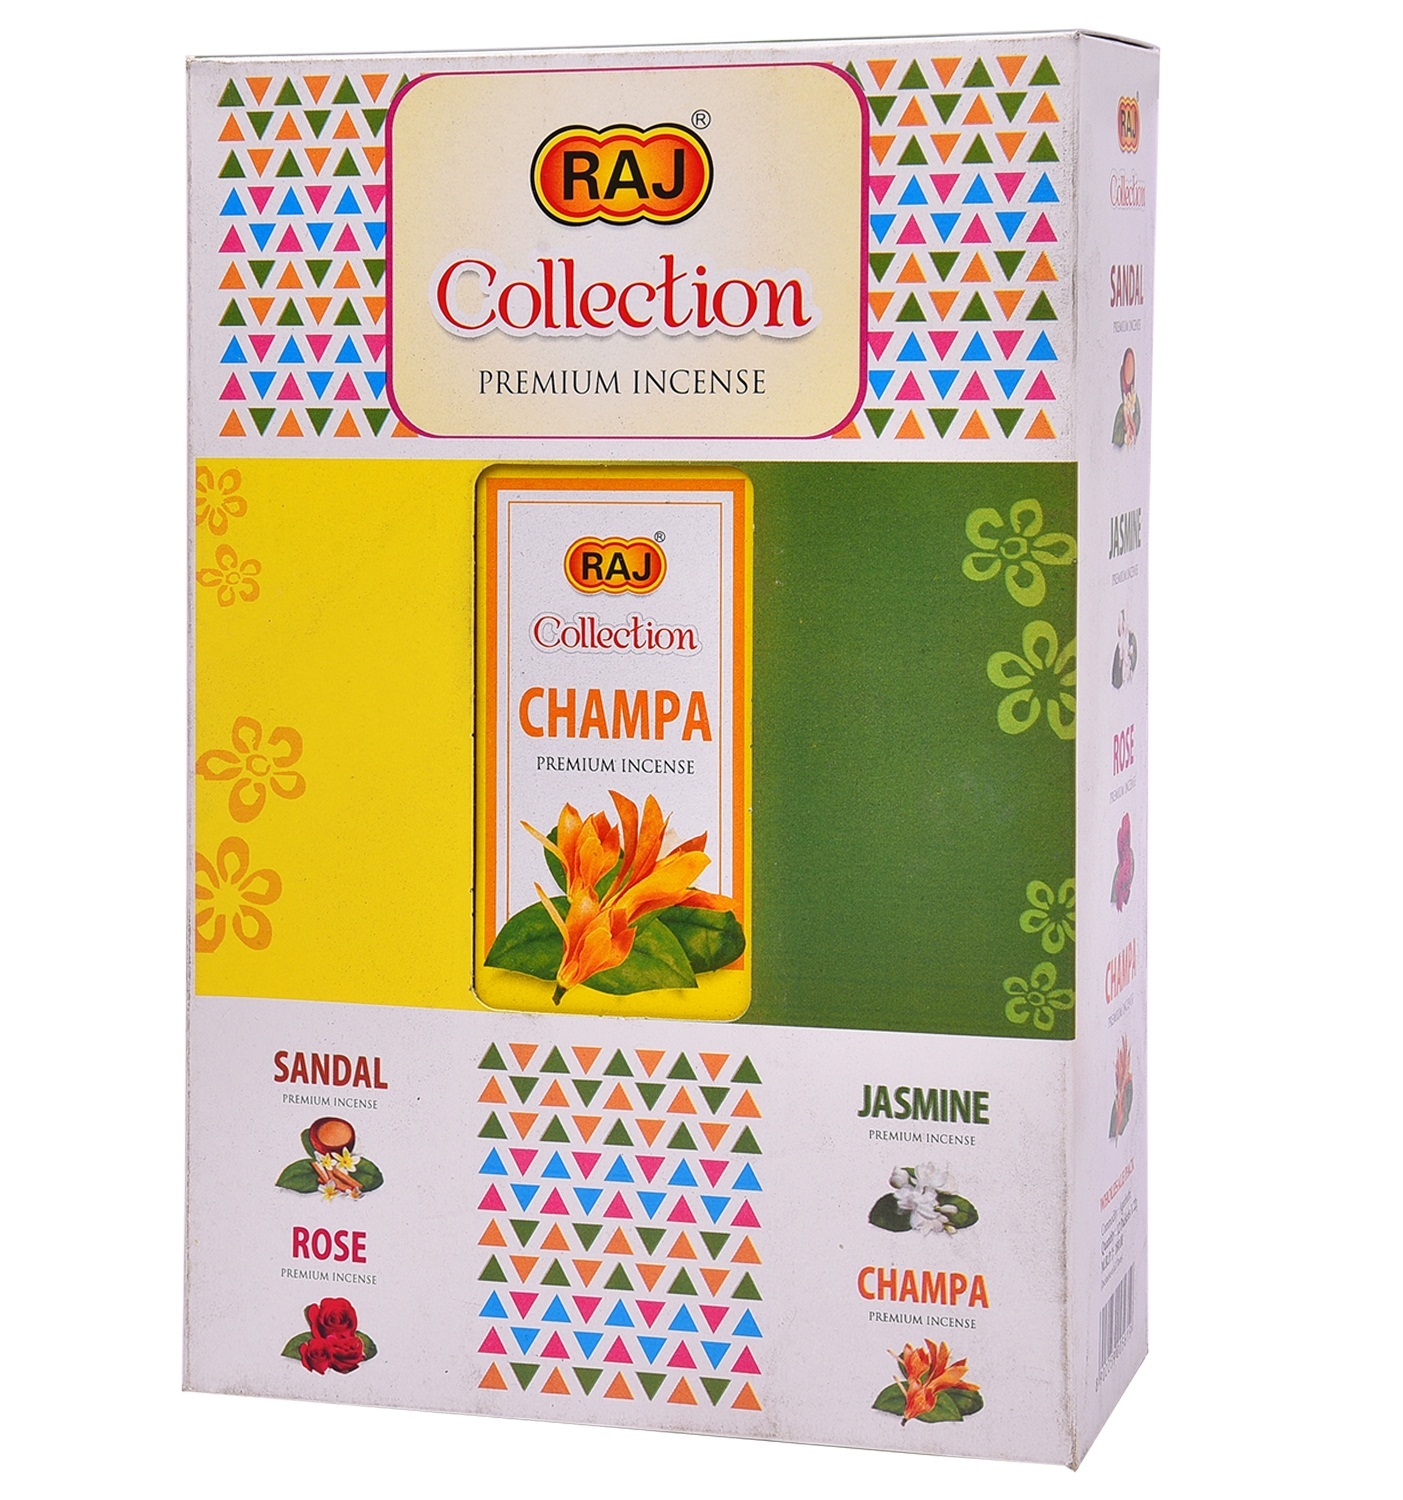 Raj champa collection big